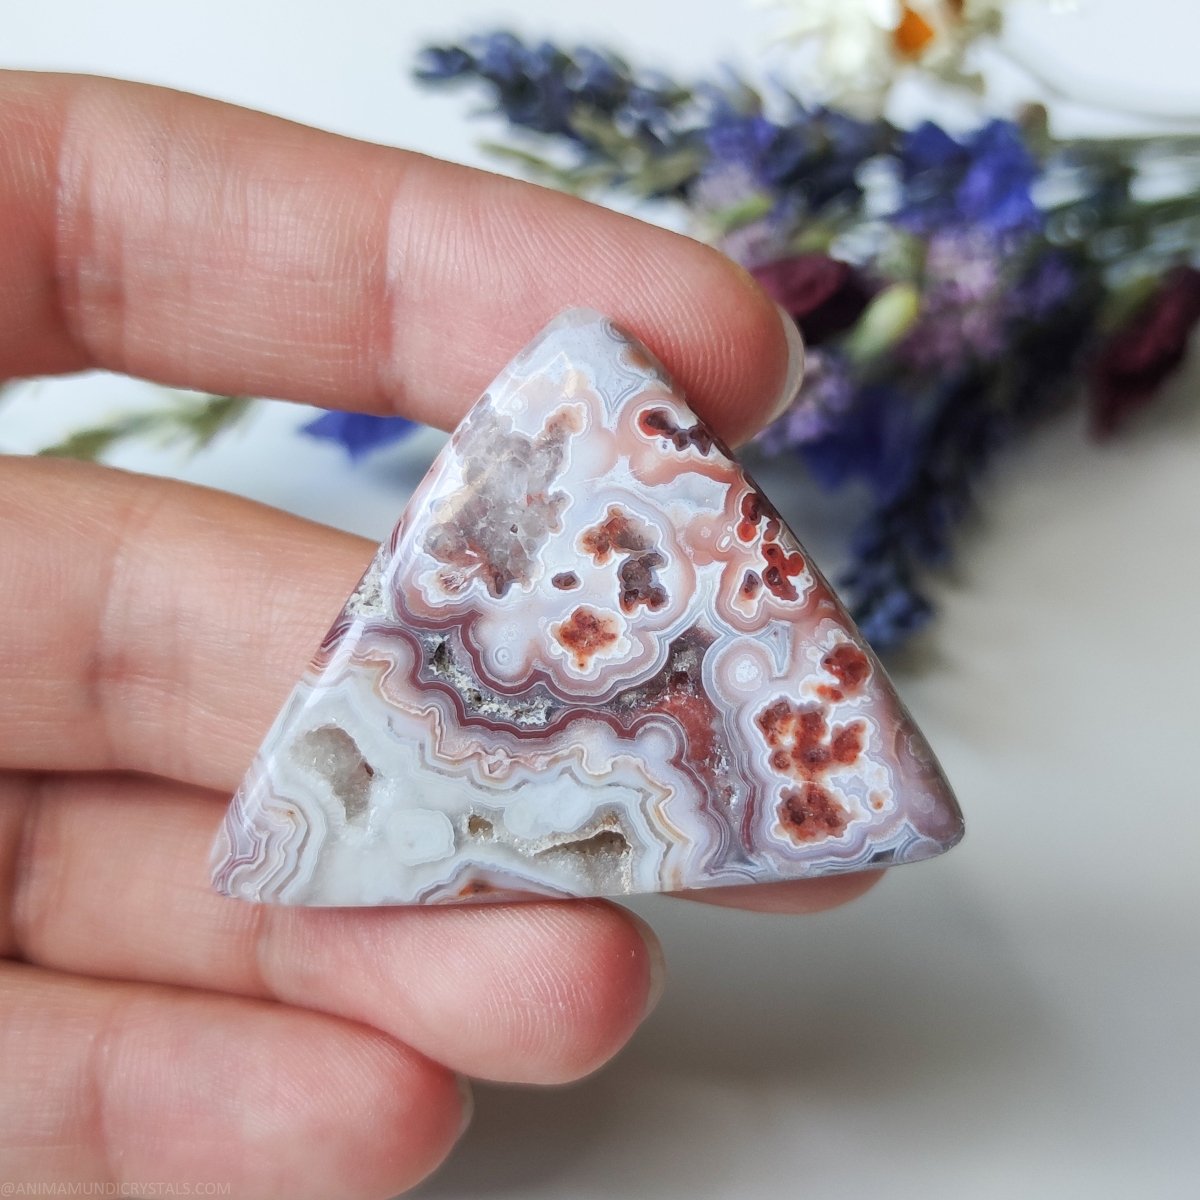 Driehoek Crazy Lace Agaat met Druzy - Anima Mundi-kristallen